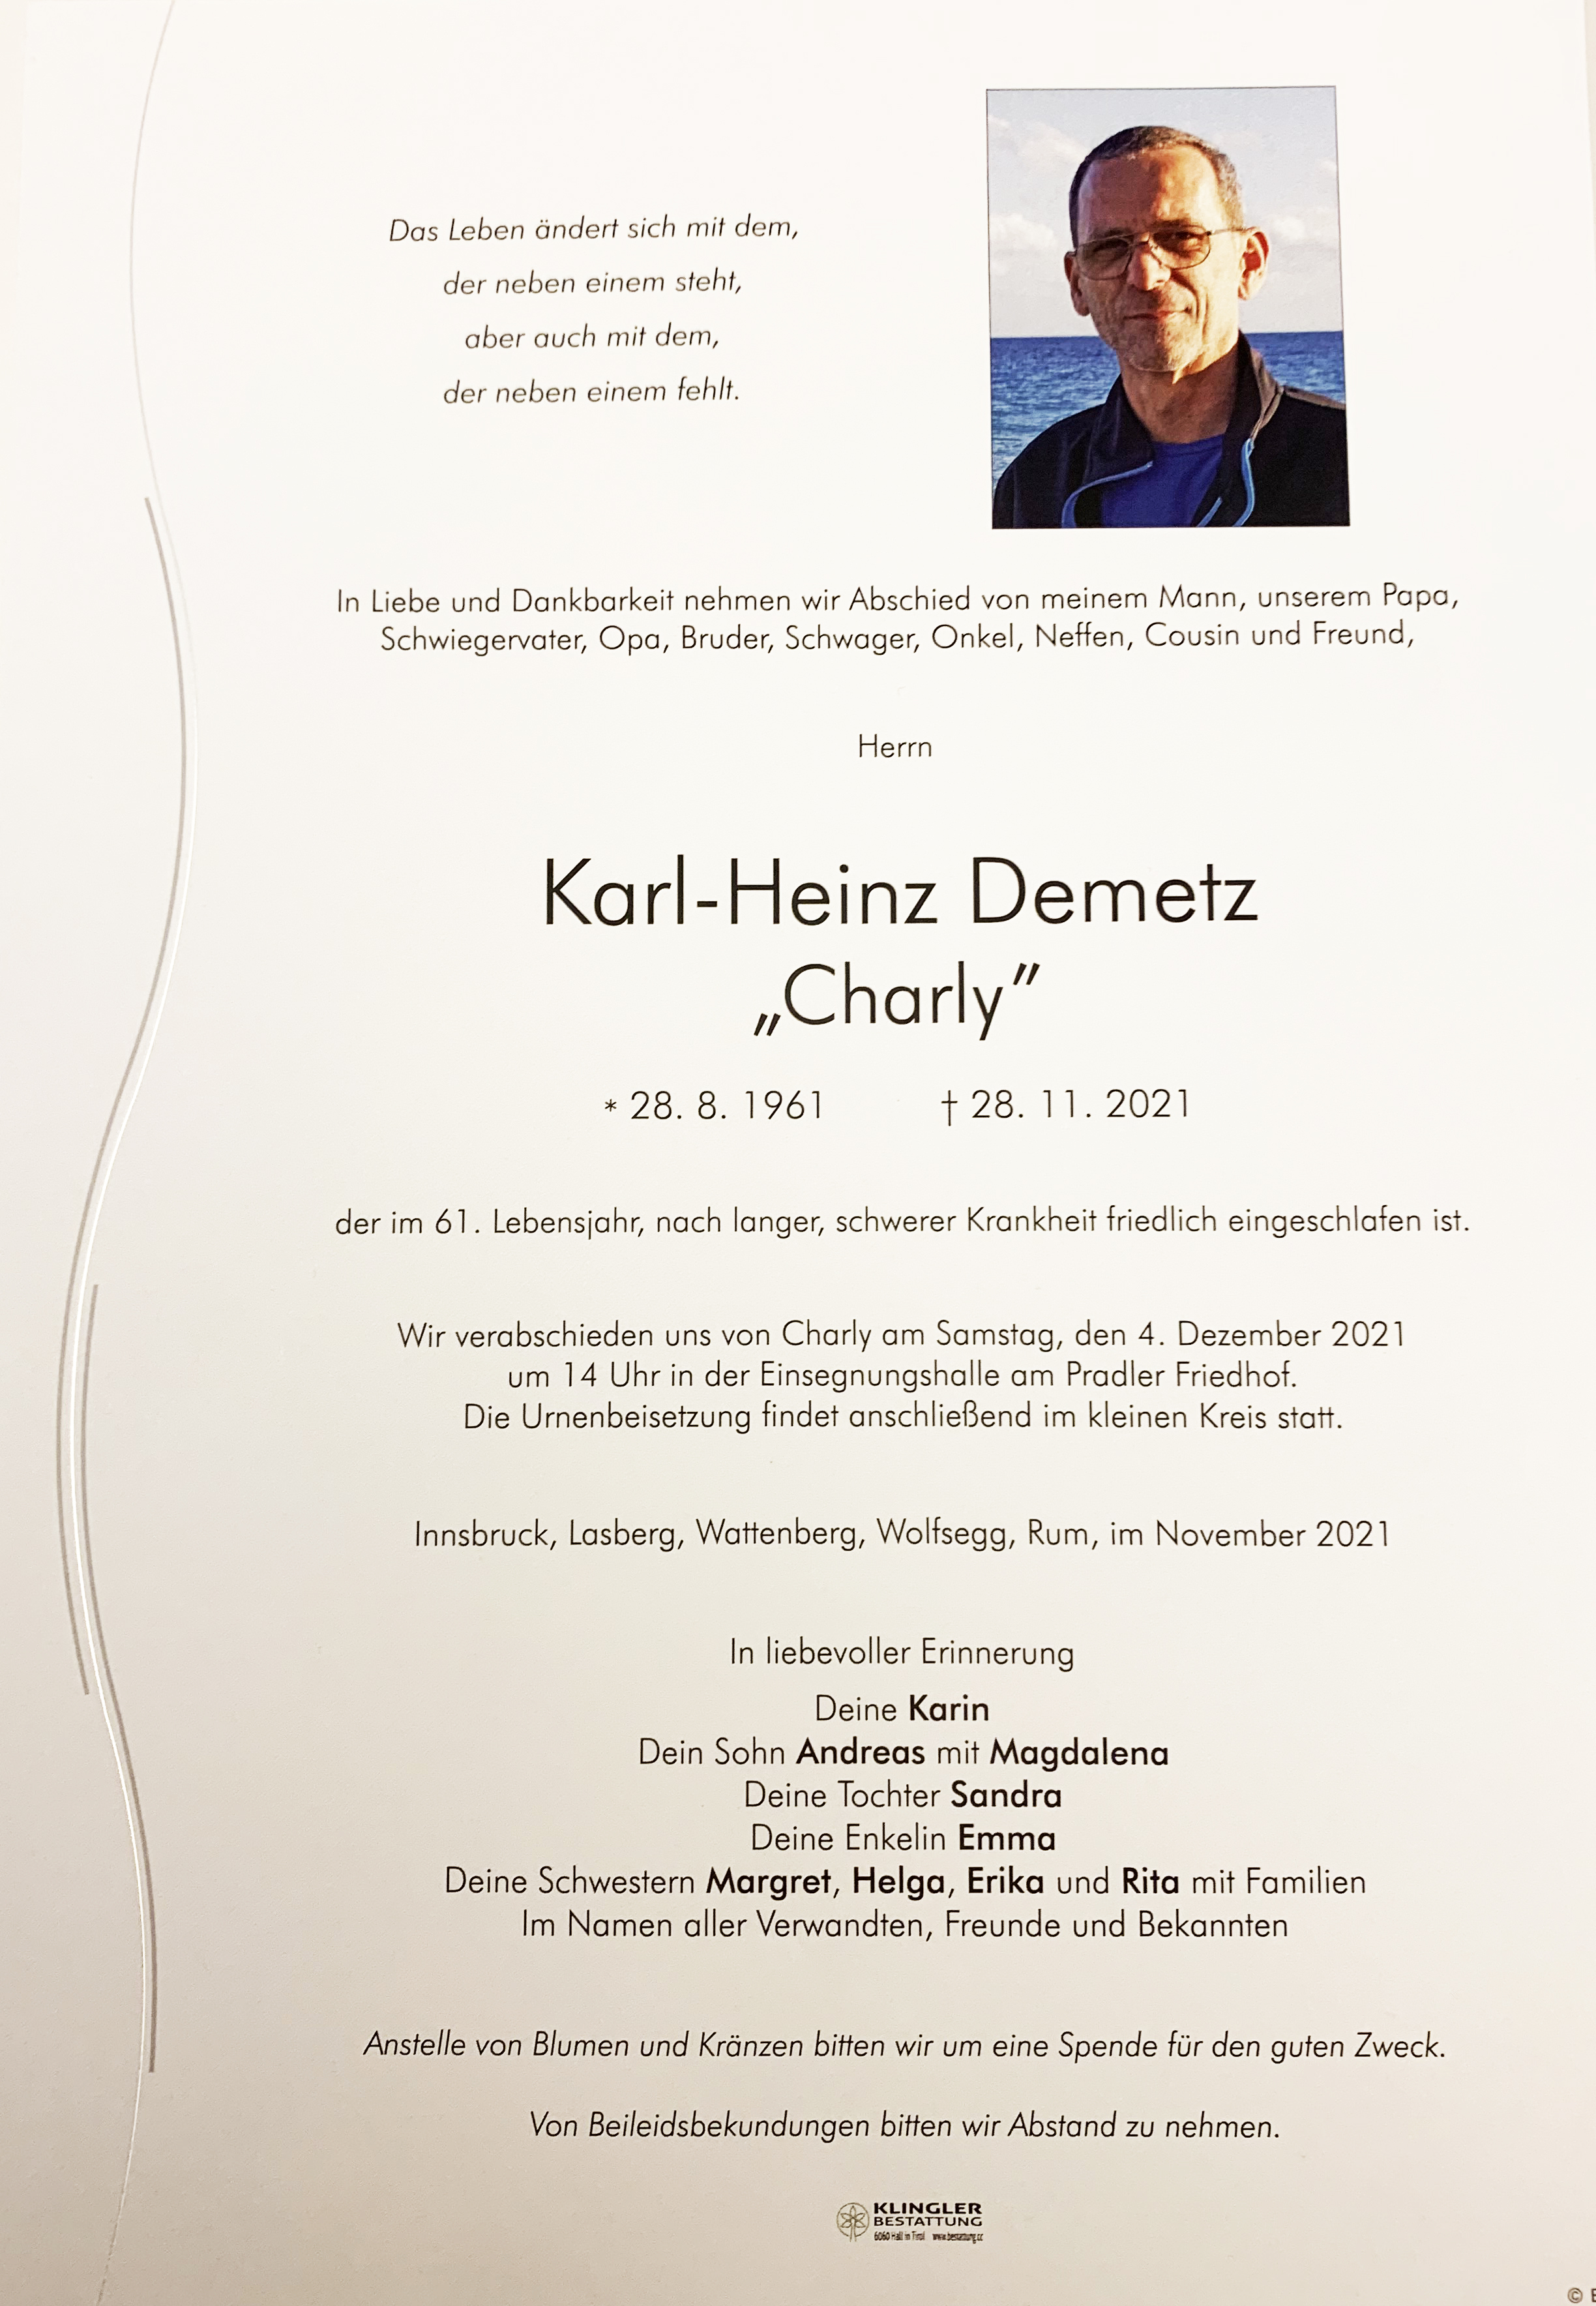 Karl-Heinz Demetz